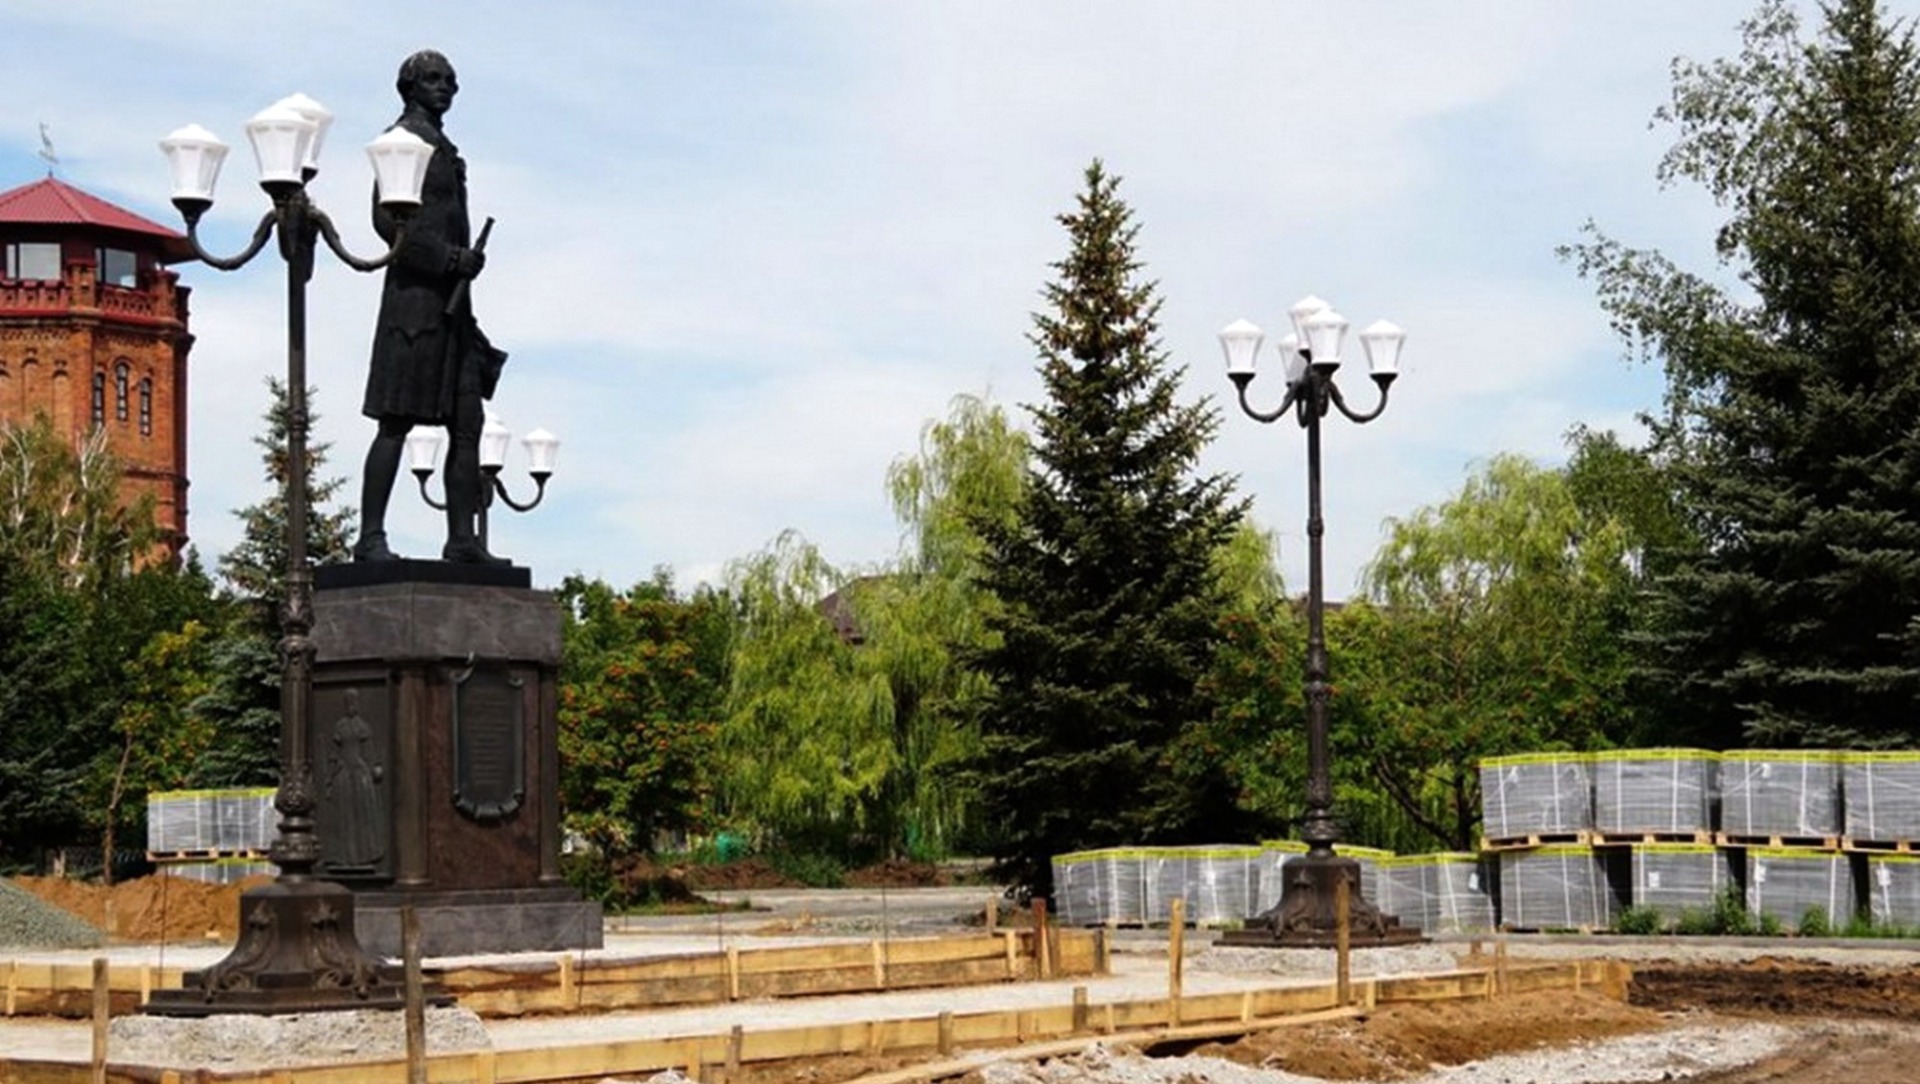 Основатель города Кирилов с грустью смотрит на происходящее